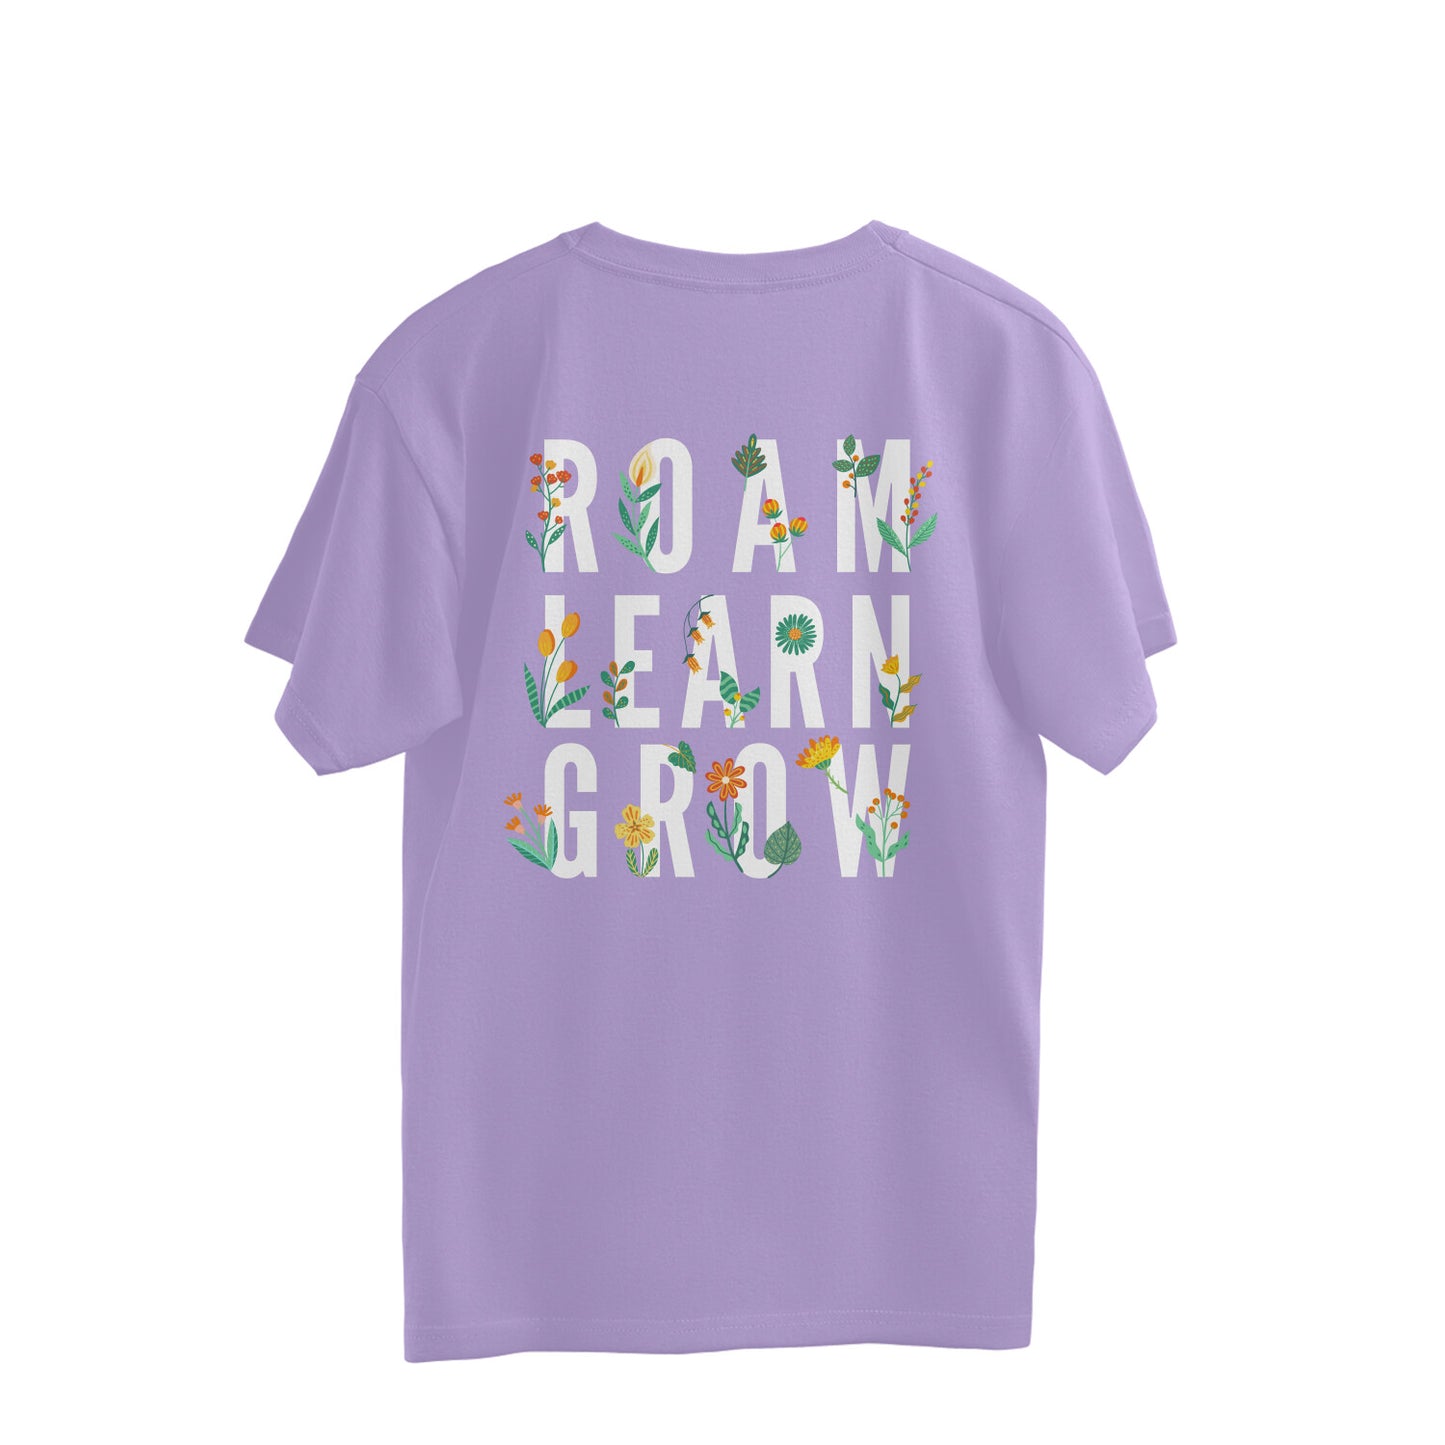 Roam Learn Grow Overhalf T-shirt